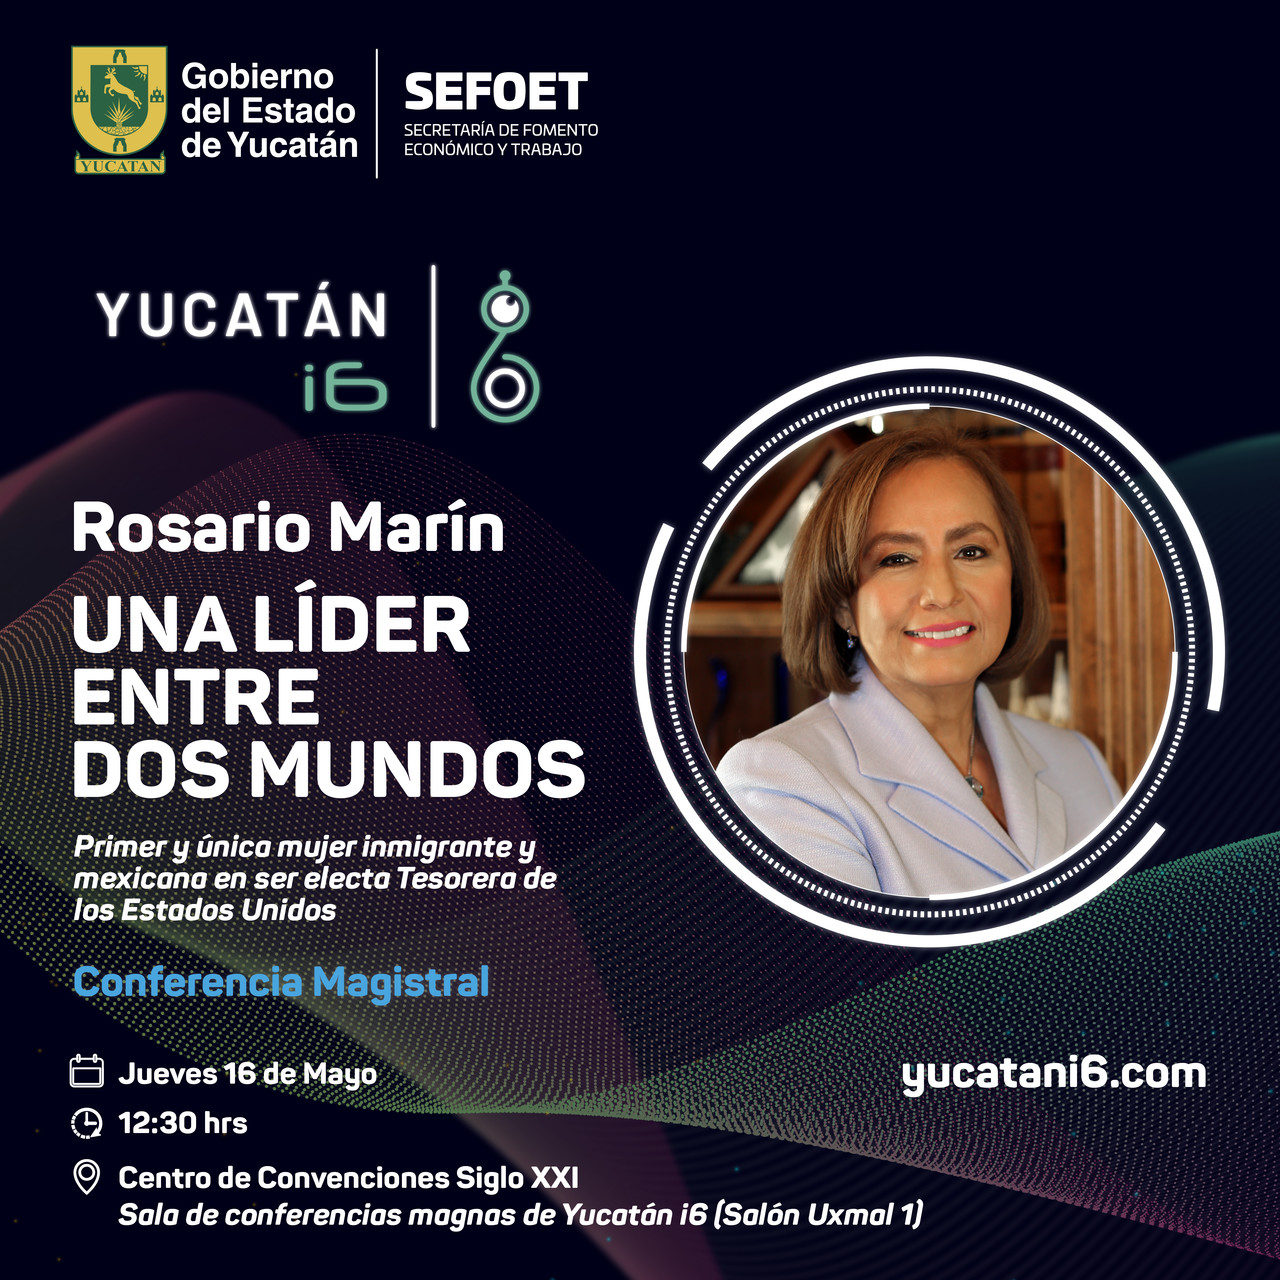 Rosario Marín, tesorera del gobierno de Estados Unidos, participará en la conferencia magistral “Una líder entre dos mundos” este 16 de mayo.- Foto de la Sefoet